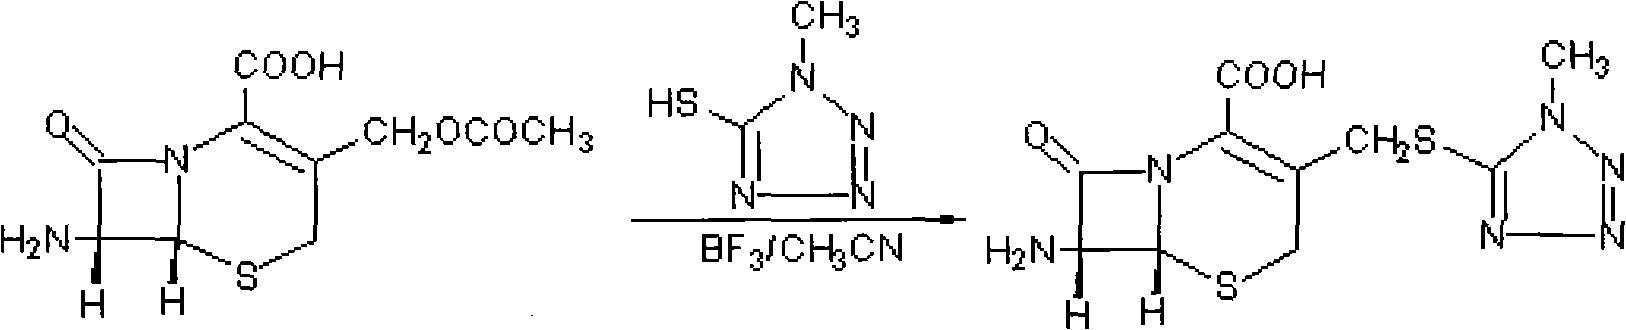 Preparation method of 7-aminocephalo-5-mercapto-1-methyltetrazole